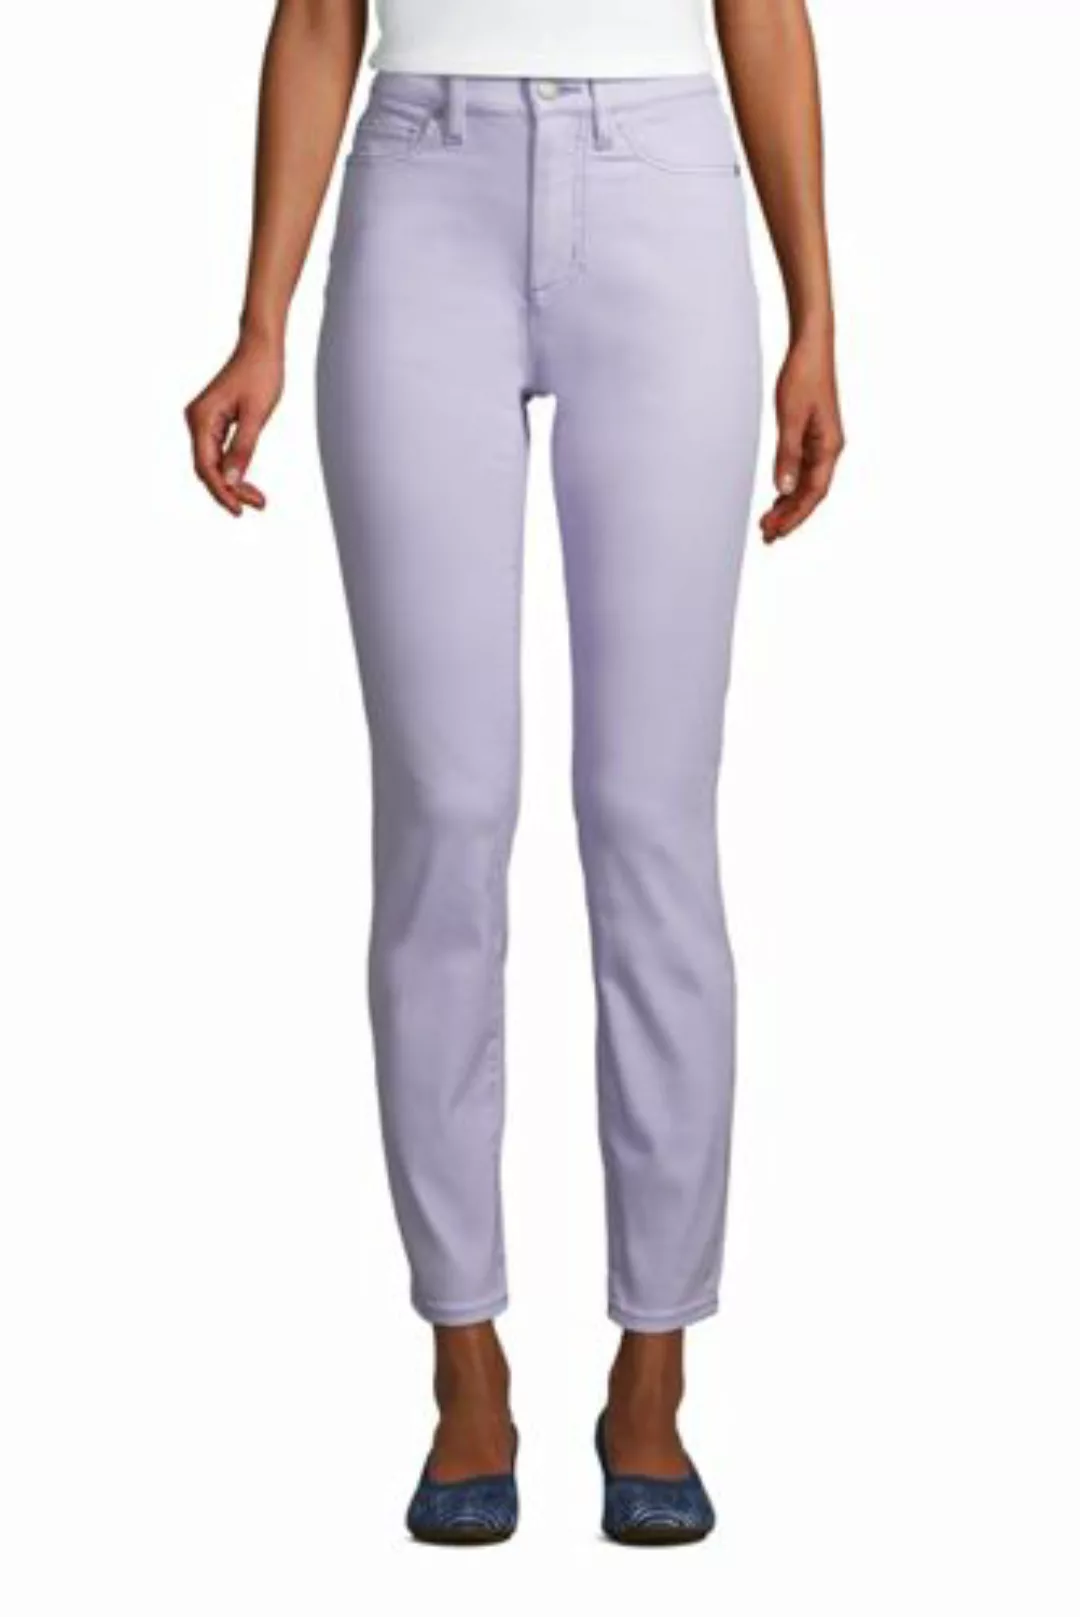 Slim Fit Öko Jeans High Waist in Petite-Größe, Damen, Größe: XS Petite, Lil günstig online kaufen